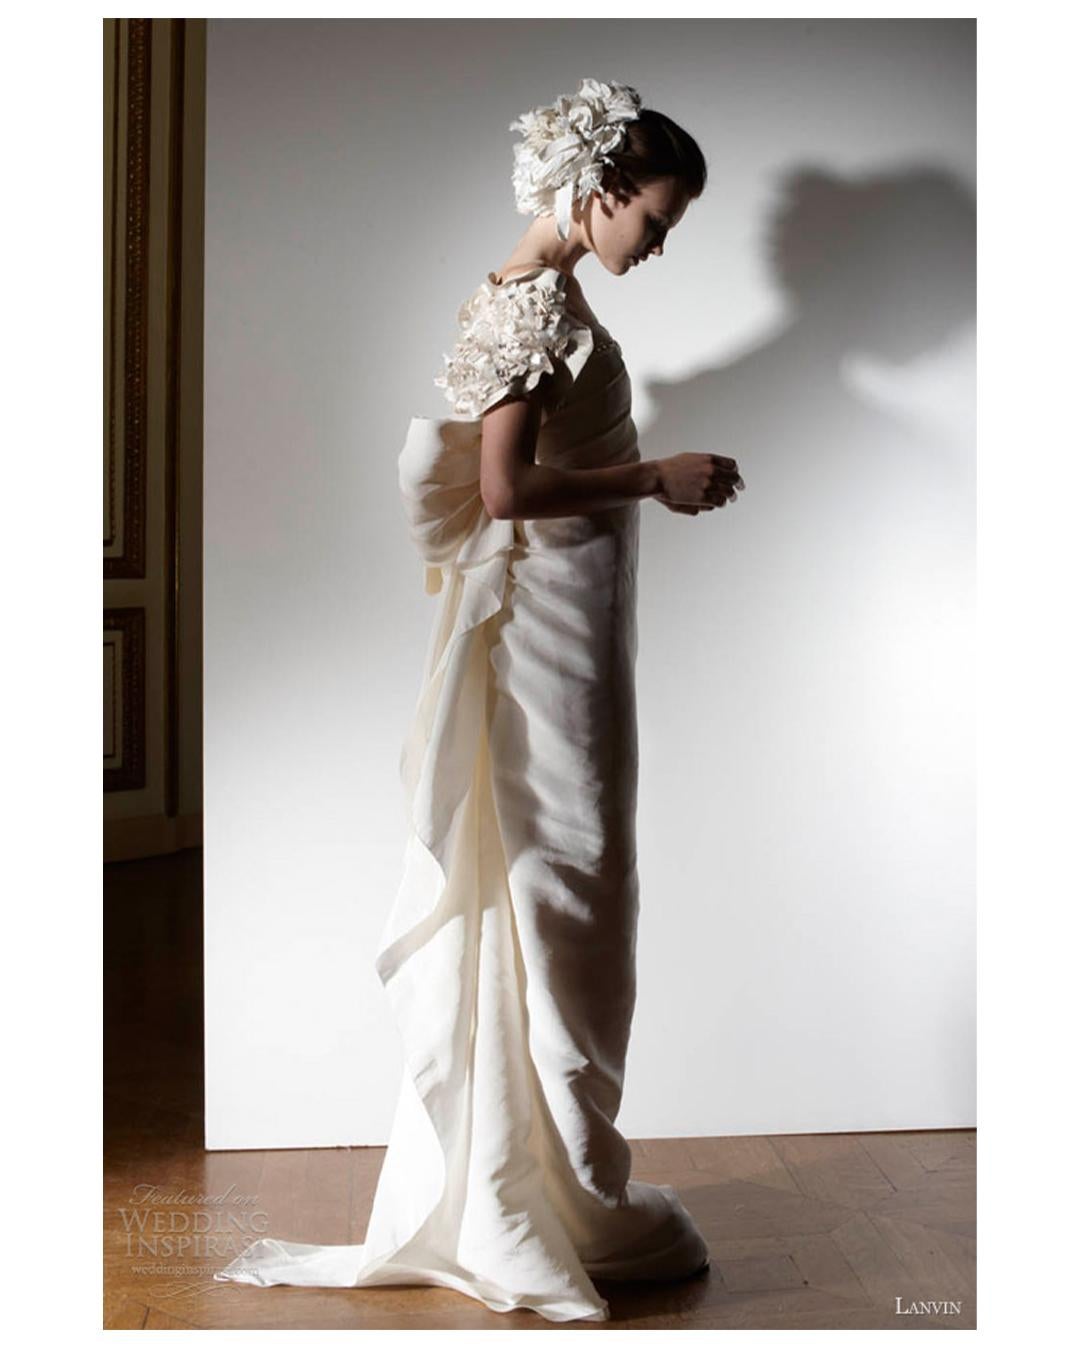 Love Lali Vintage

Il s'agit d'une robe vraiment magnifique issue de la collection Blanche 2013 de Lanvin, réalisée par Alber Elbaz. Bien qu'il s'agisse d'une robe de mariée, elle peut également être portée comme robe de soirée. 
La couleur est un